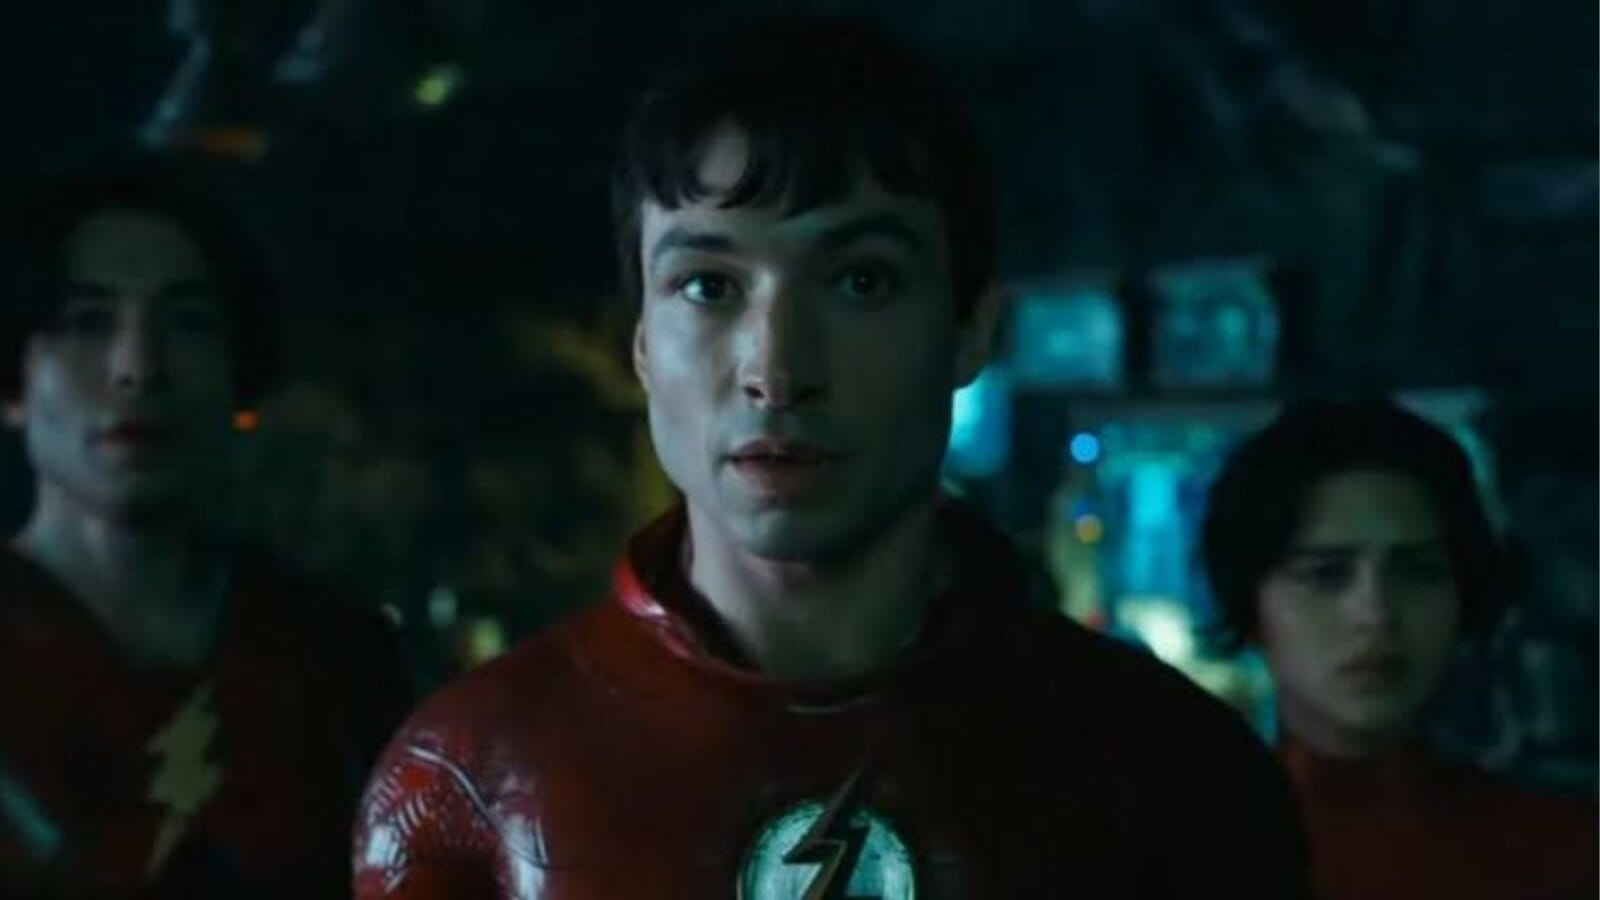 Ezra Miller as Flash